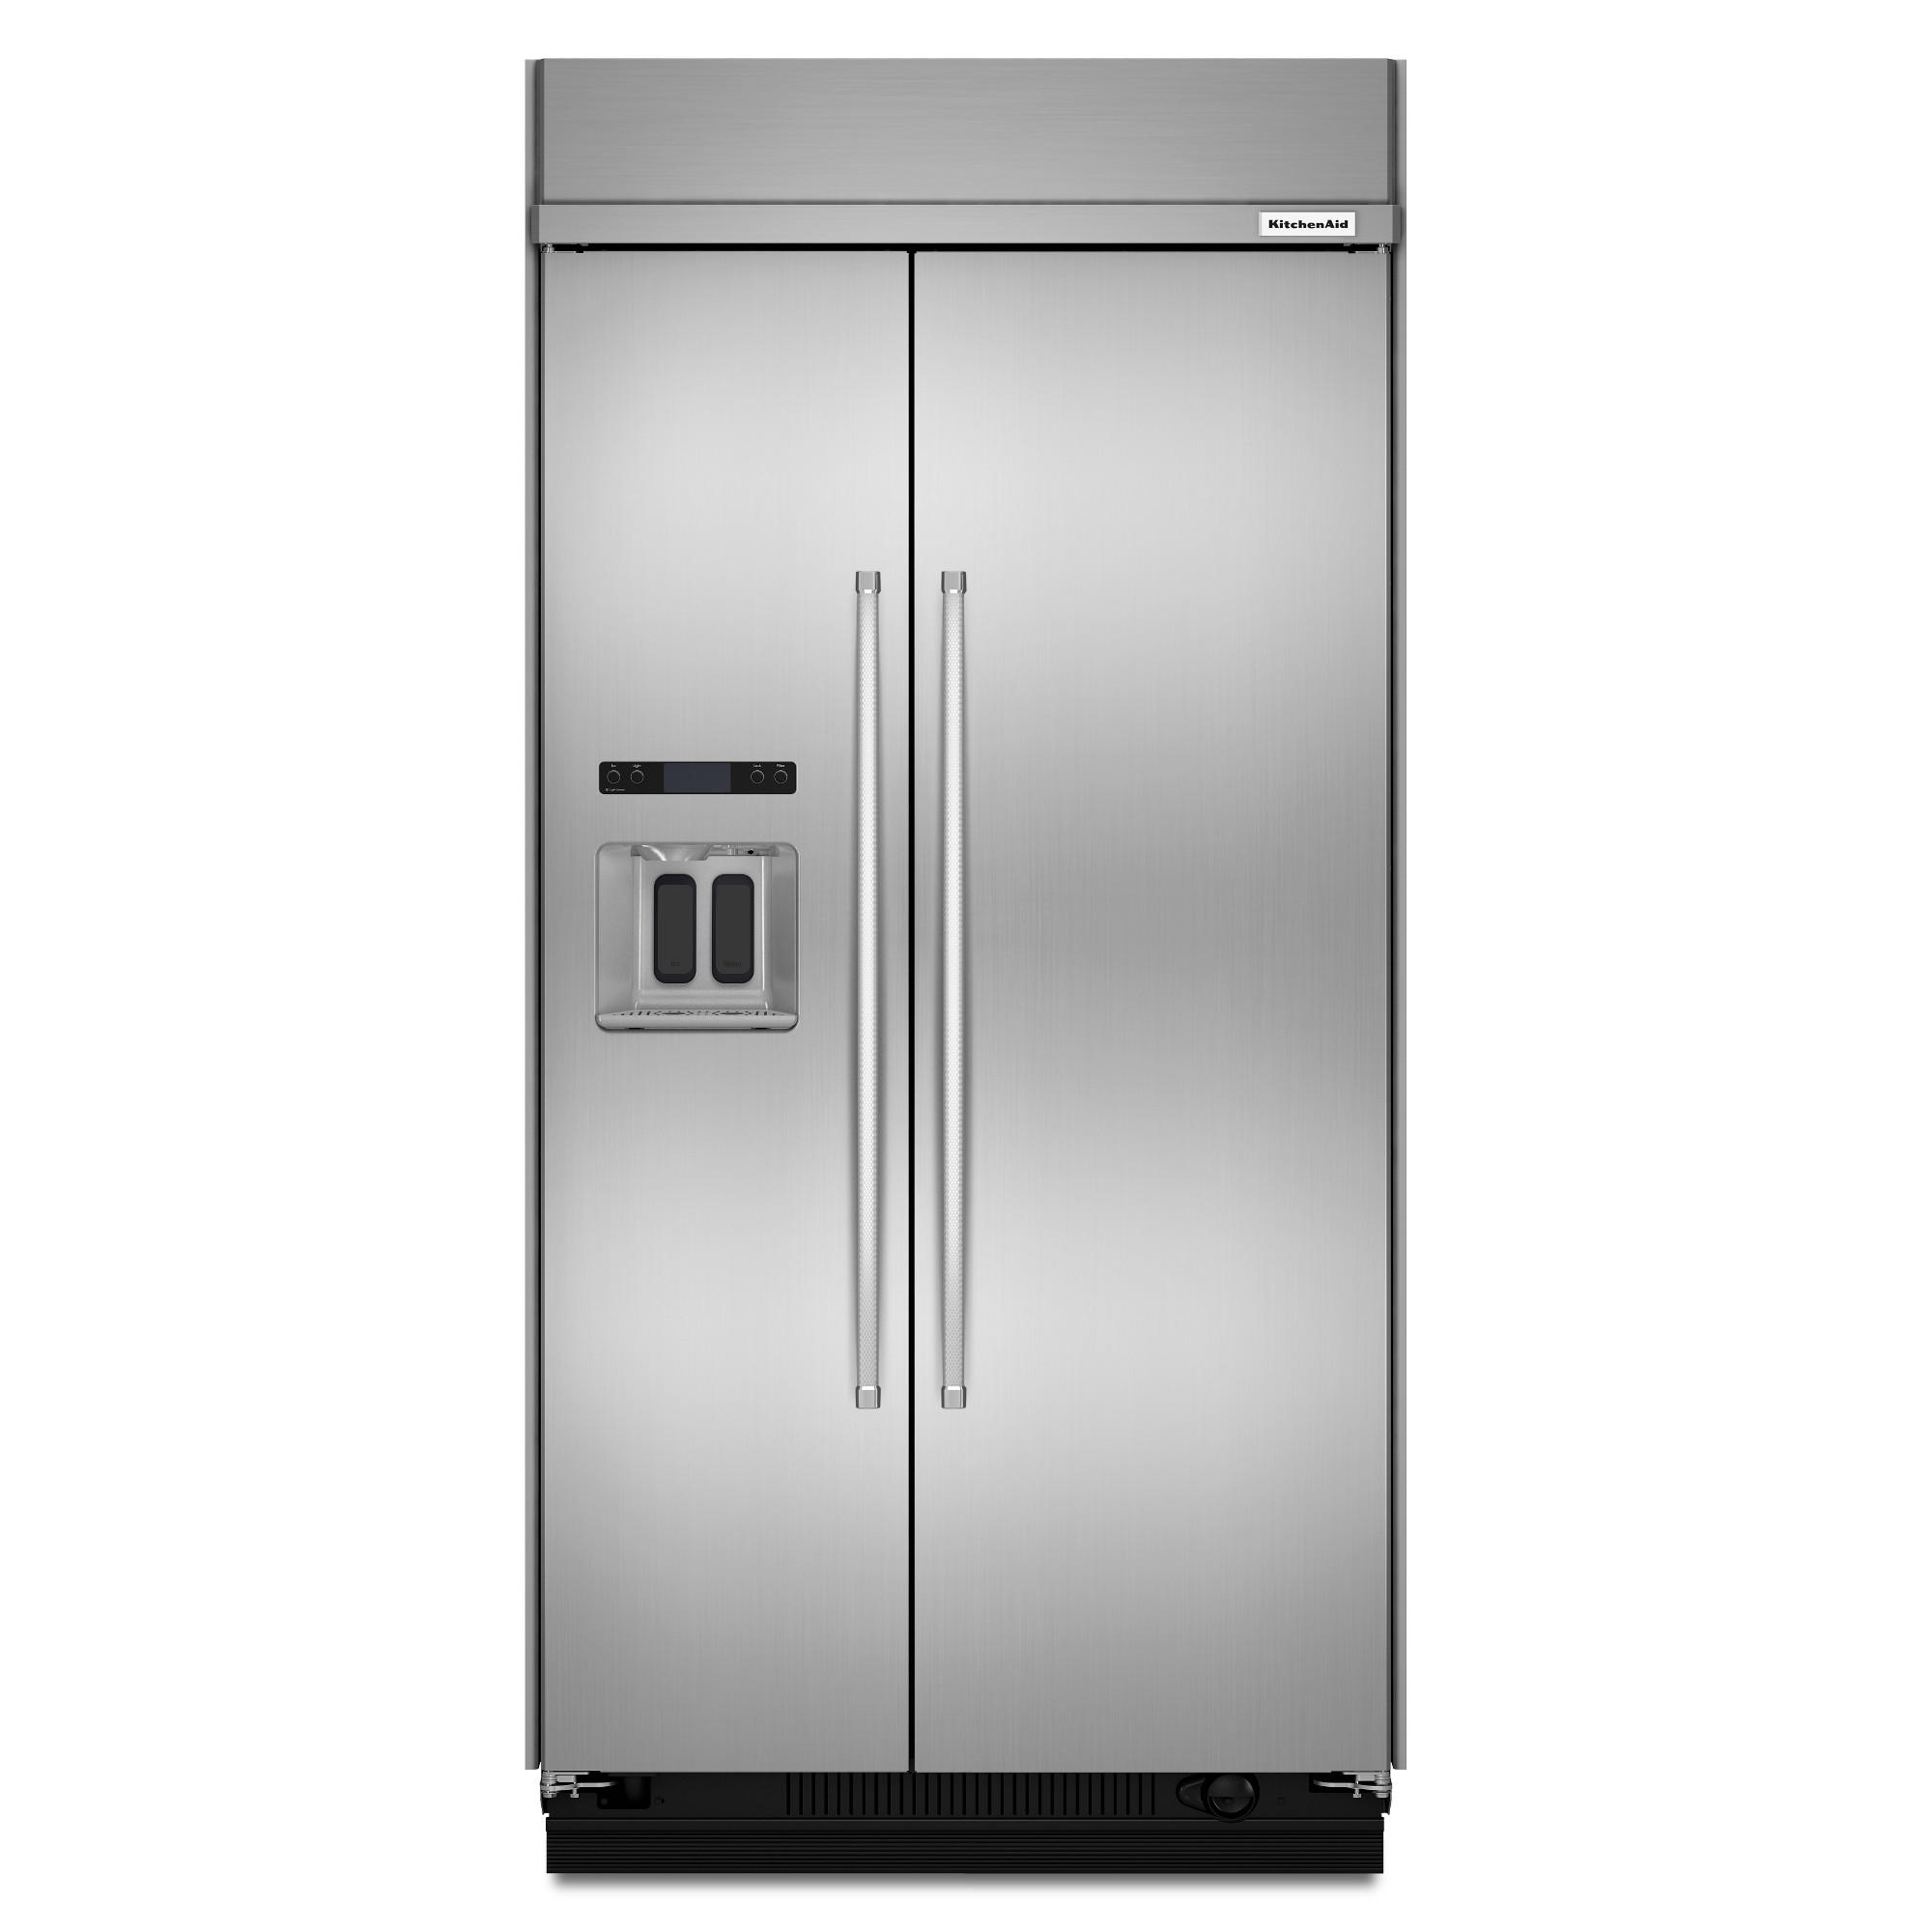 Built-In Refrigerator logo